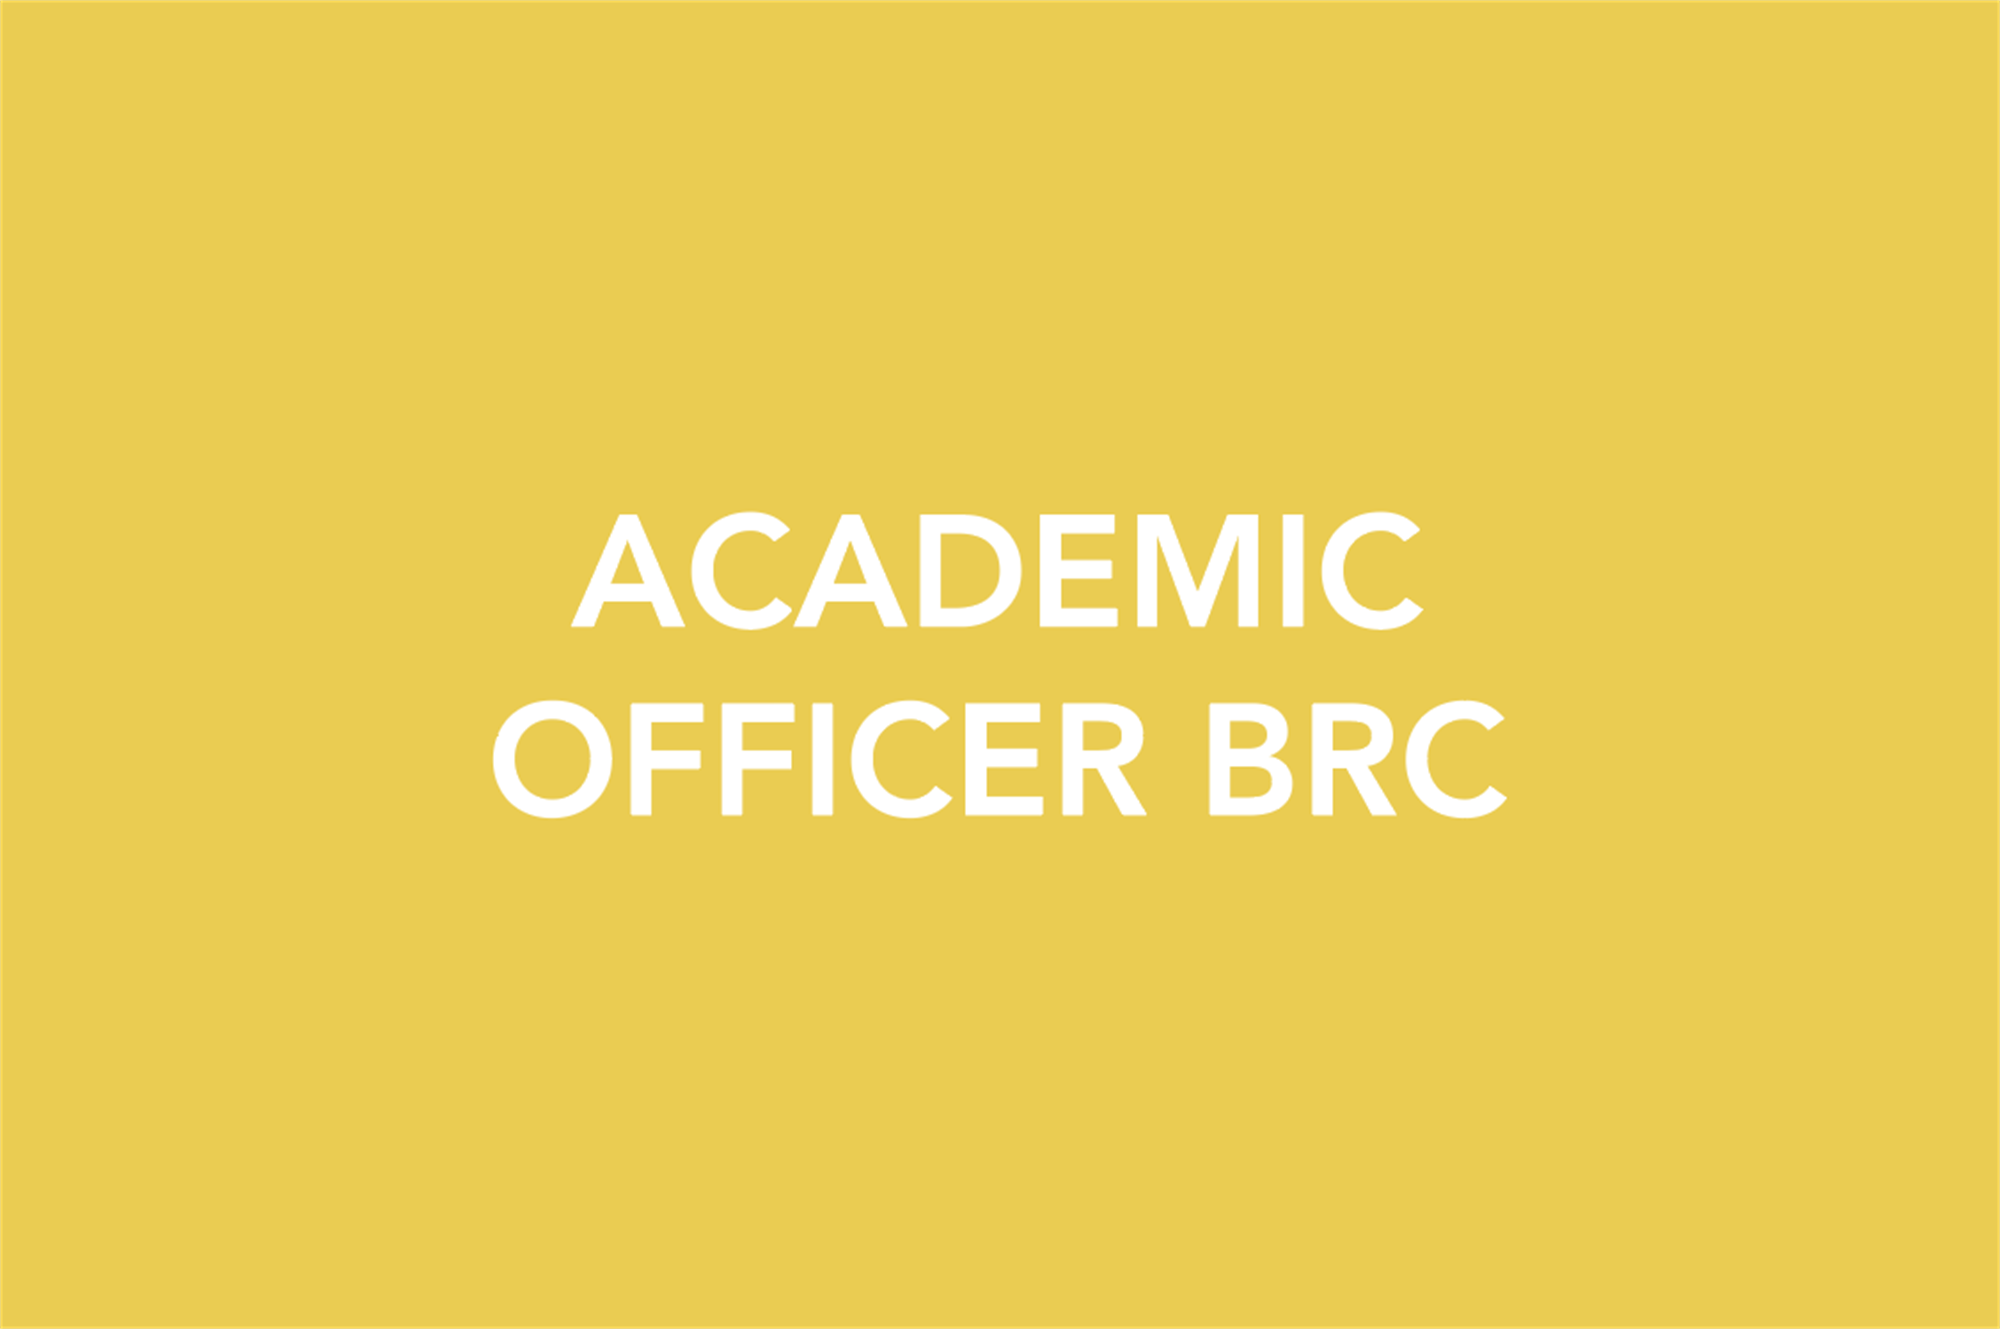 Academic Officer BRC